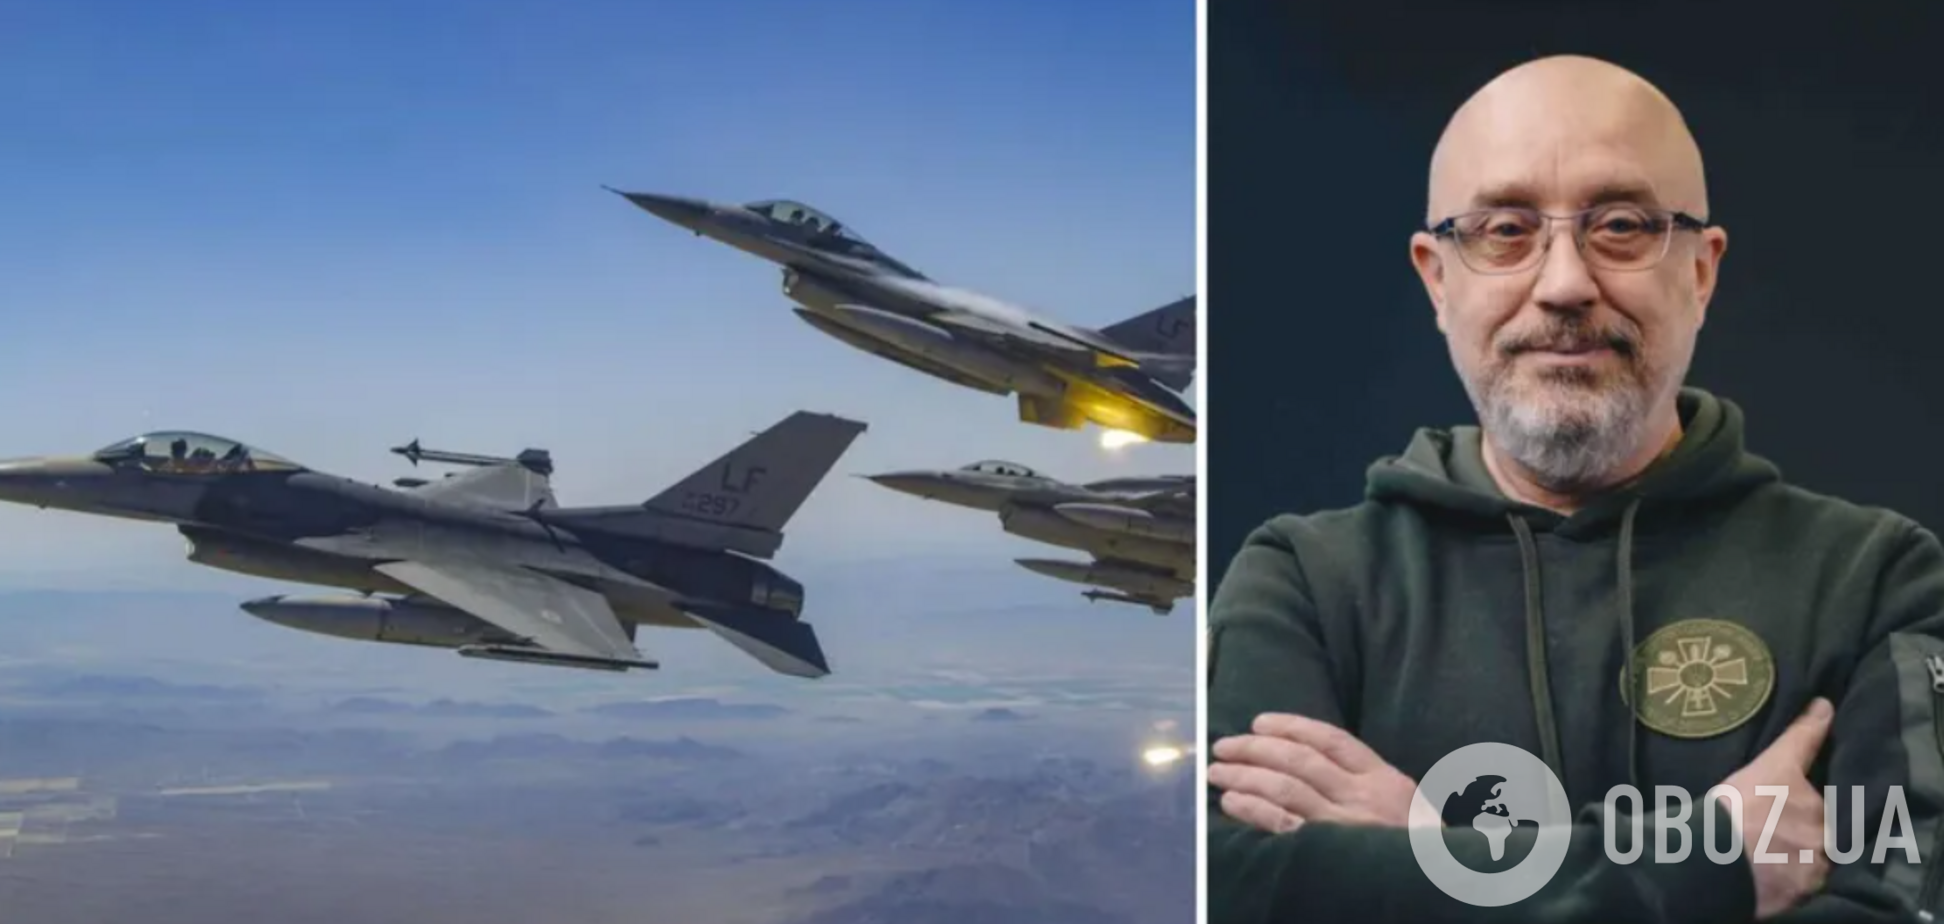  Навчання українських пілотів на F-16 розпочалися, – Резніков 